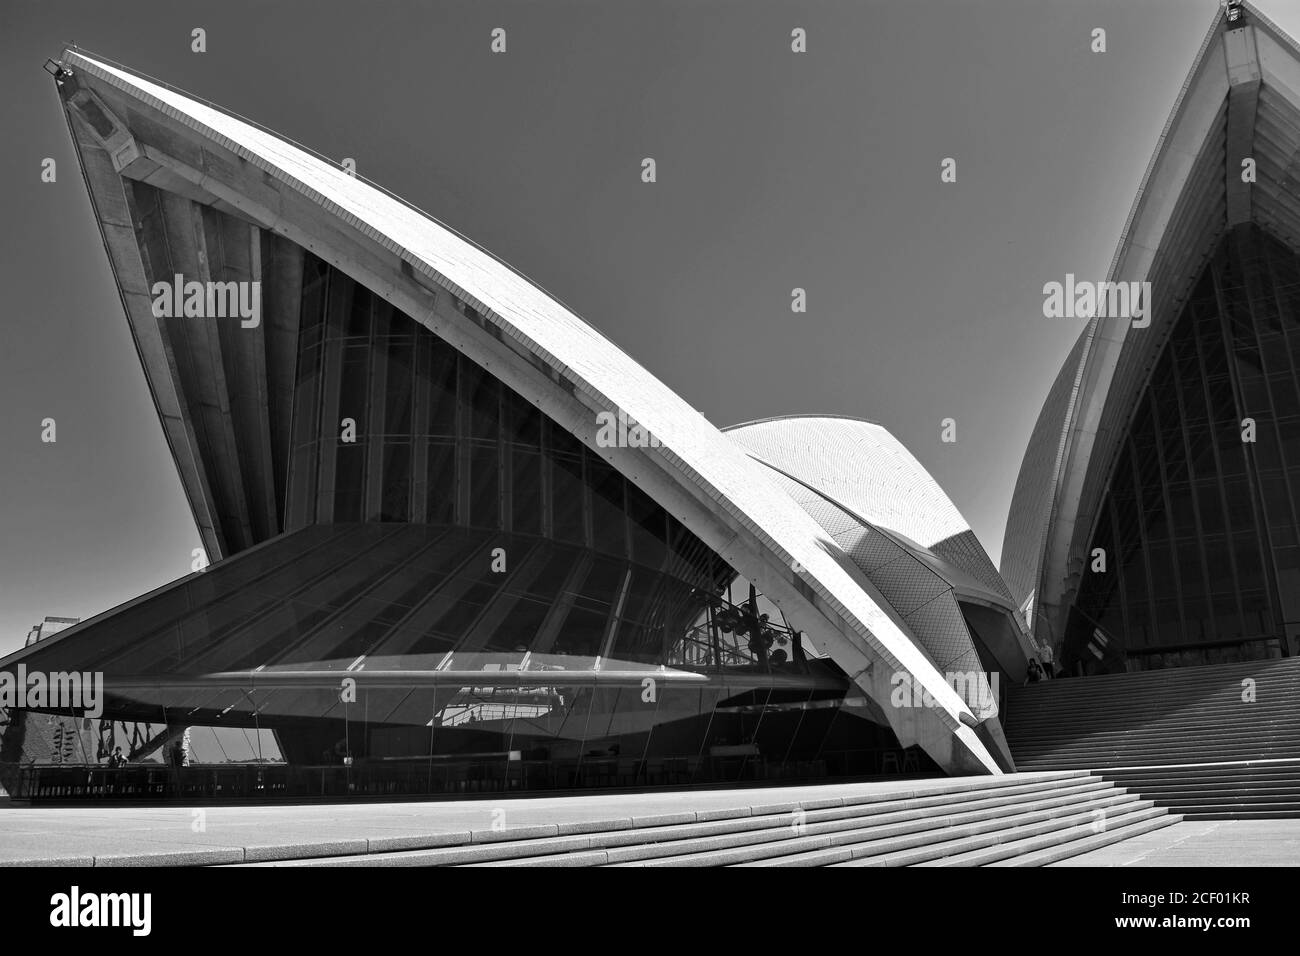 Un'immagine astratta in bianco e nero della Sydney Opera House. Gli angoli della linea del tetto e dell'architettura in vetro si innalzano contro un cielo grigio chiaro. Australia Foto Stock